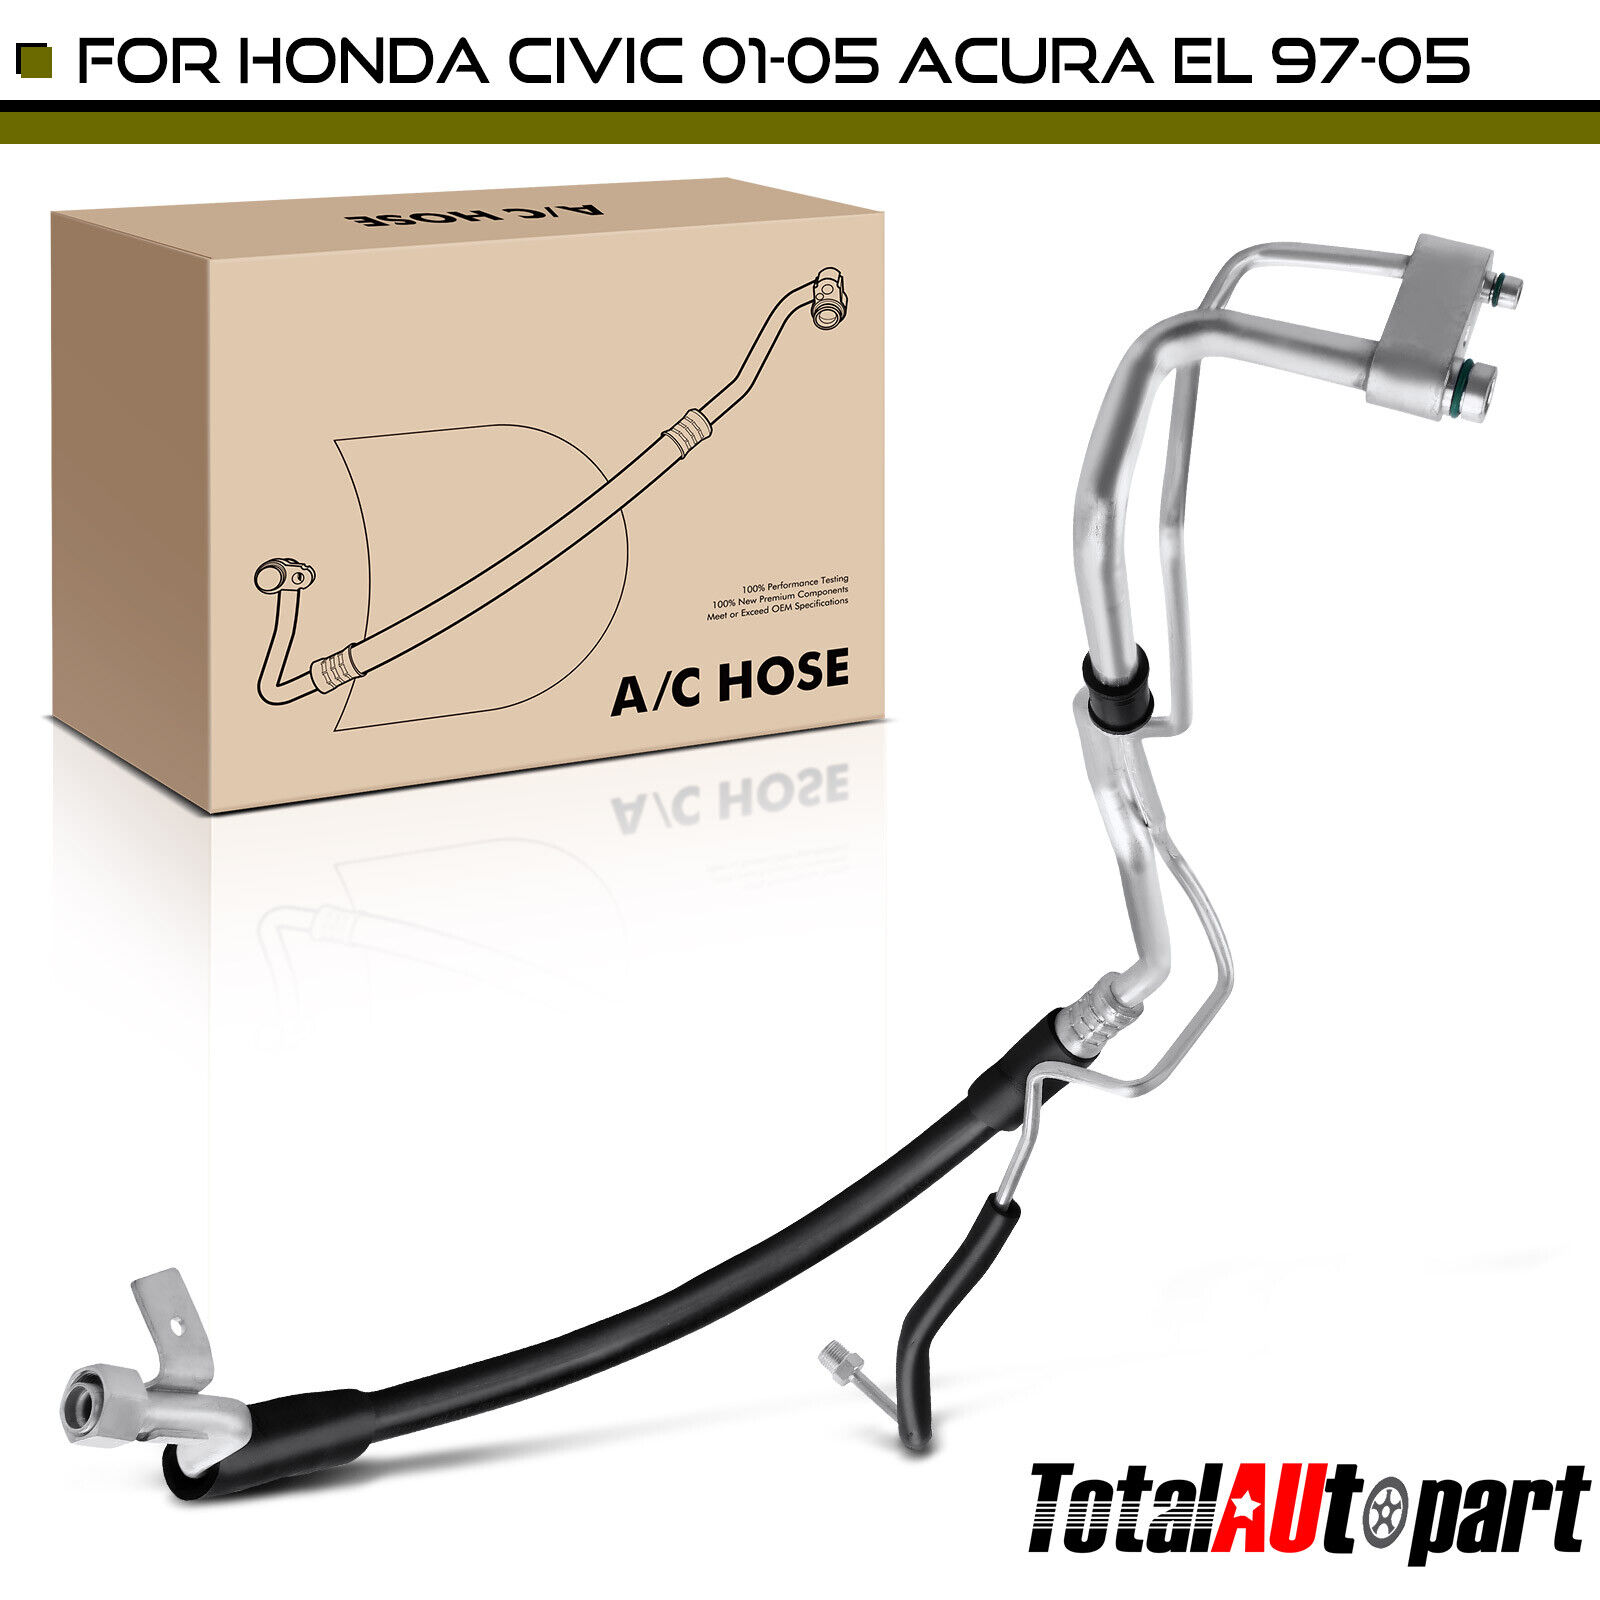 AC A/C Suction and Liquid Line Hose Assembly for Honda Civic 2001-2005 Acura EL